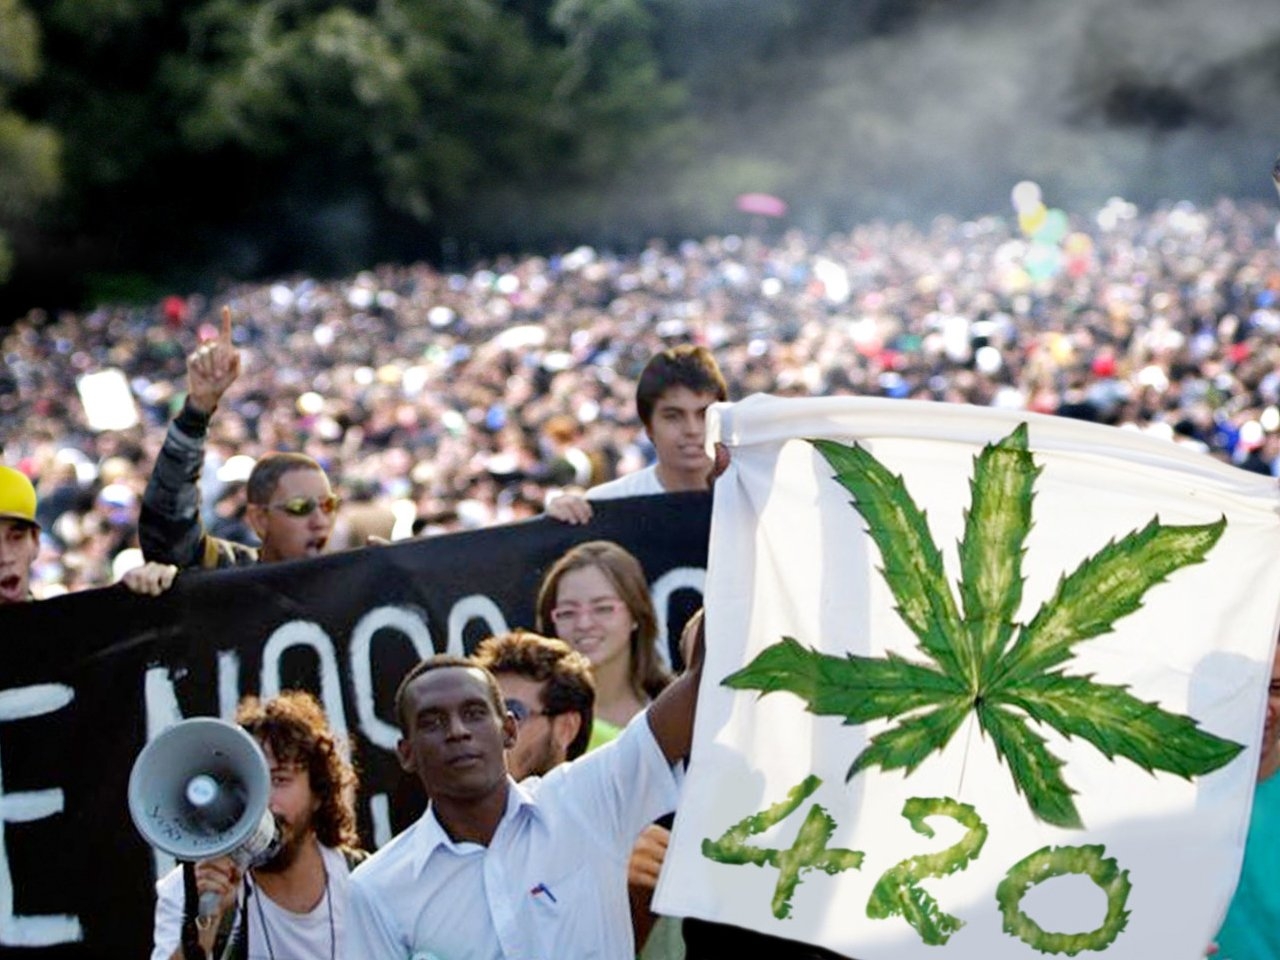 420 五十周年！為何要讓害人的毒品合法？其實大麻除了娛樂還有其它用途⋯